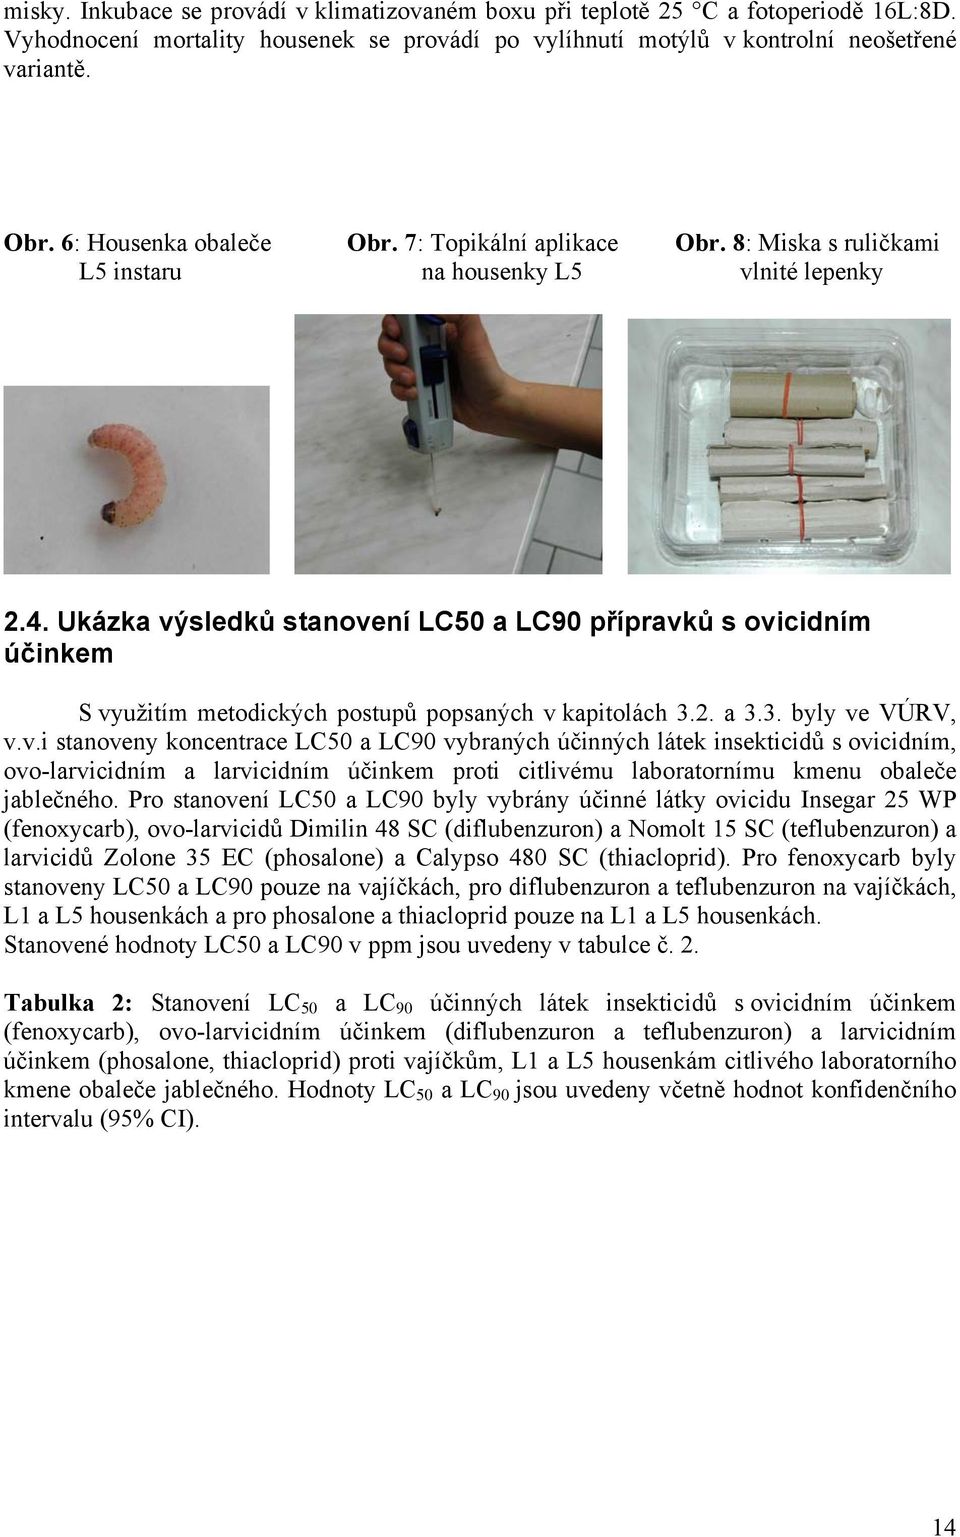 Ukázka výsledků stanovení LC50 a LC90 přípravků s ovicidním účinkem S využitím metodických postupů popsaných v kapitolách 3.2. a 3.3. byly ve VÚRV, v.v.i stanoveny koncentrace LC50 a LC90 vybraných účinných látek insekticidů s ovicidním, ovo-larvicidním a larvicidním účinkem proti citlivému laboratornímu kmenu obaleče jablečného.